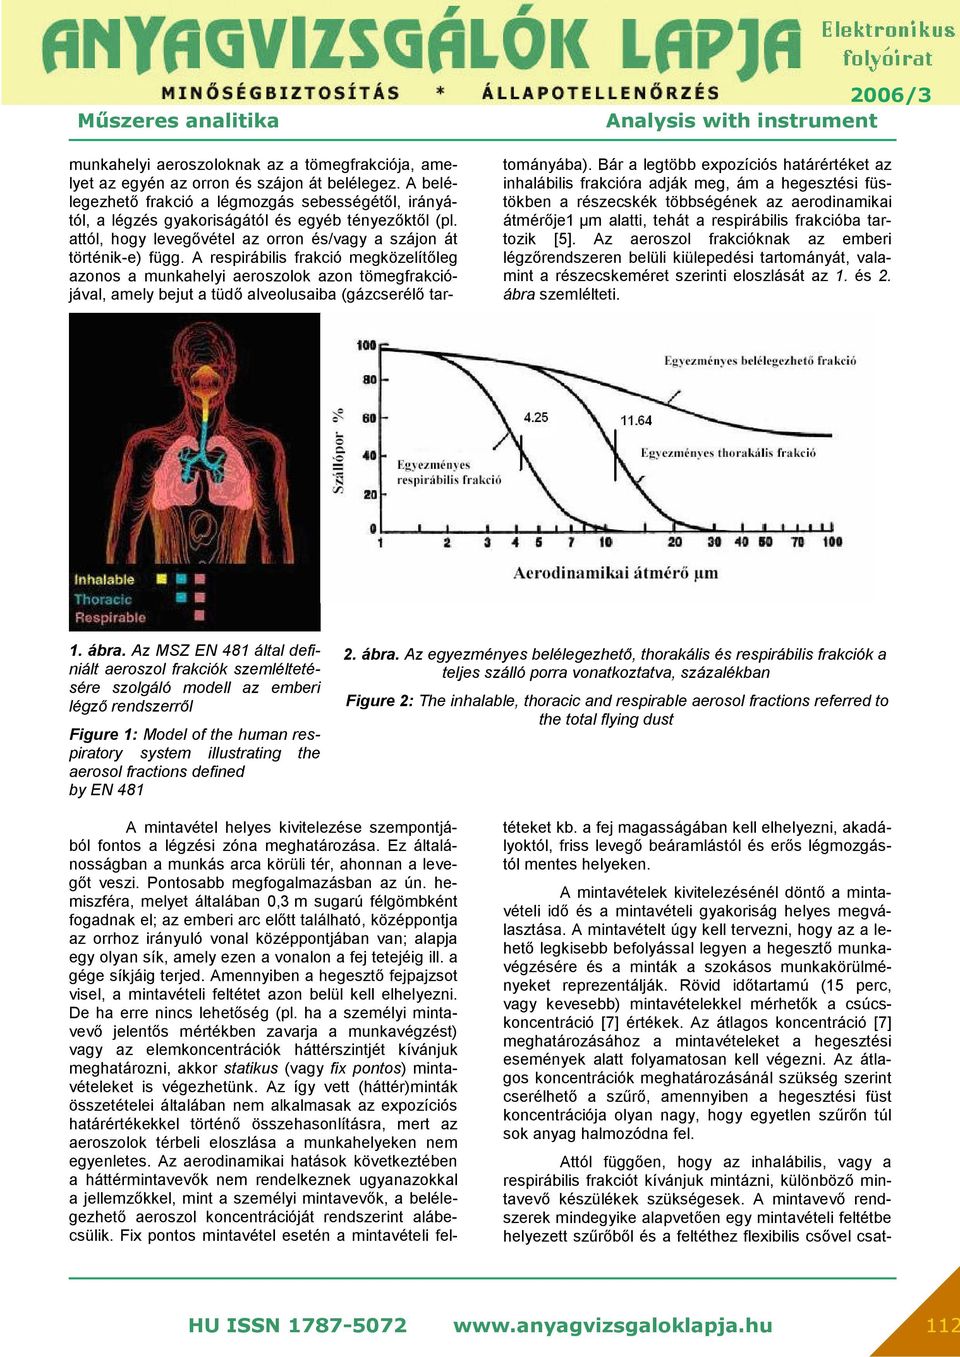 A respirábilis frakció megközelítőleg azonos a munkahelyi aeroszolok azon tömegfrakciójával, amely bejut a tüdő alveolusaiba (gázcserélő tar- tományába).